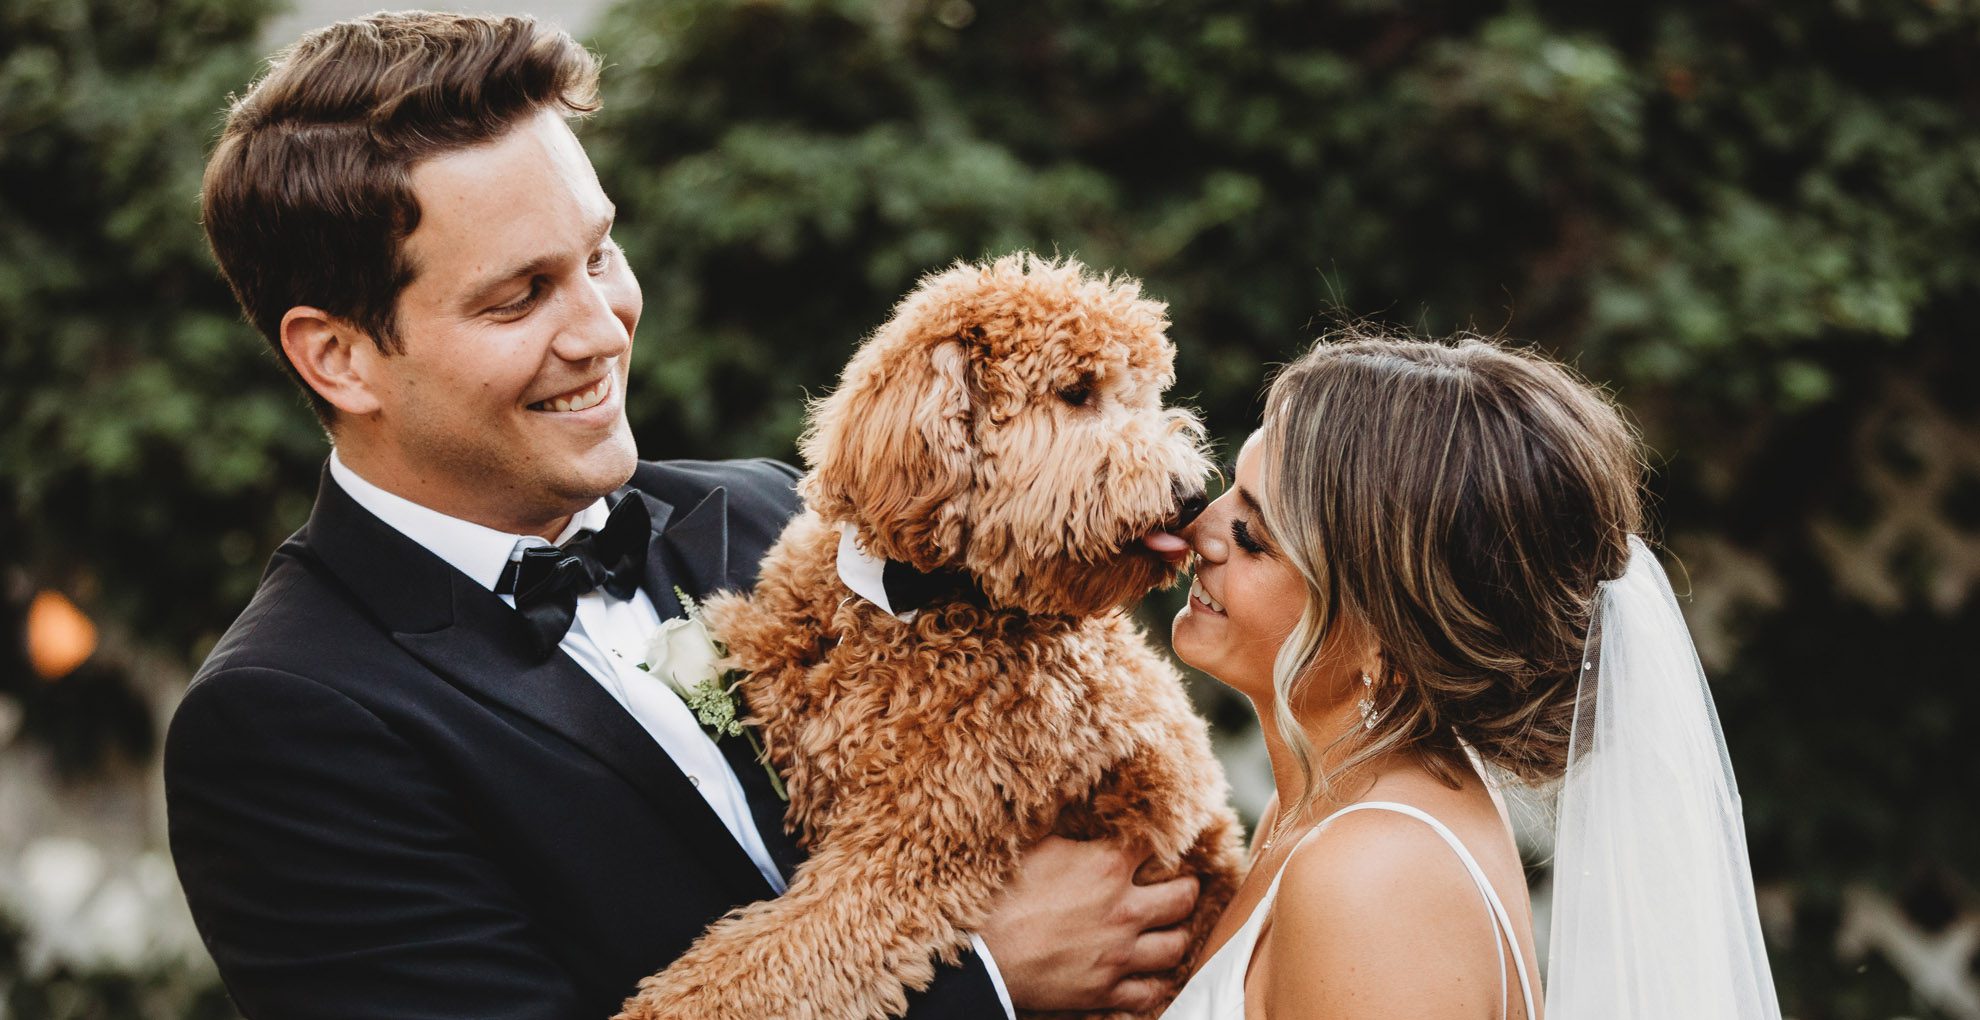 dog kissing bride at backyard wedding